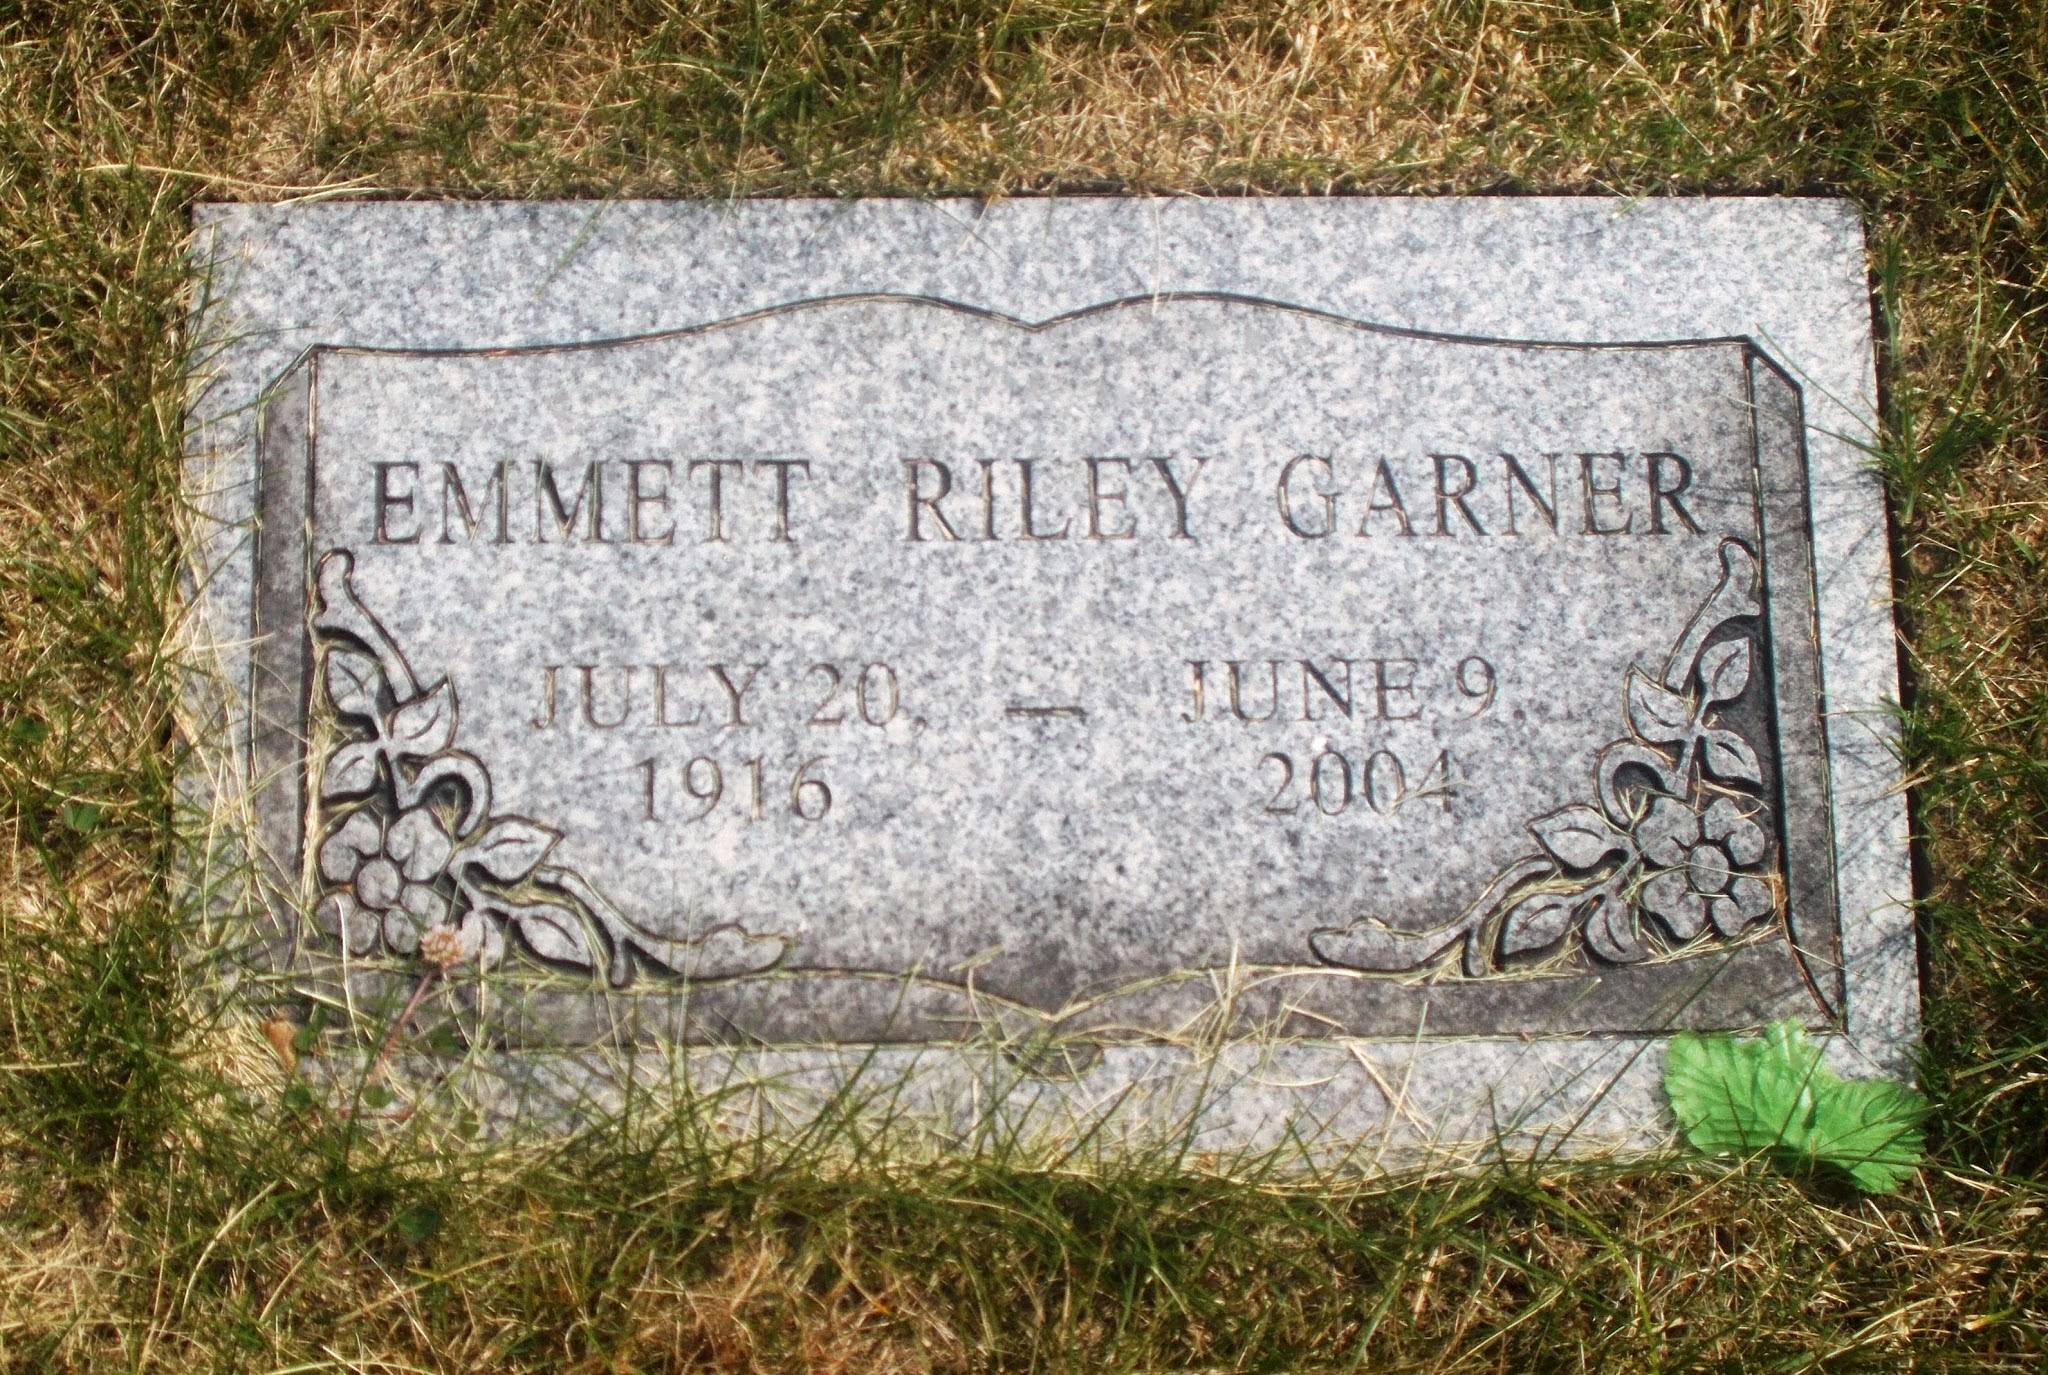 Emmett Riley Garner